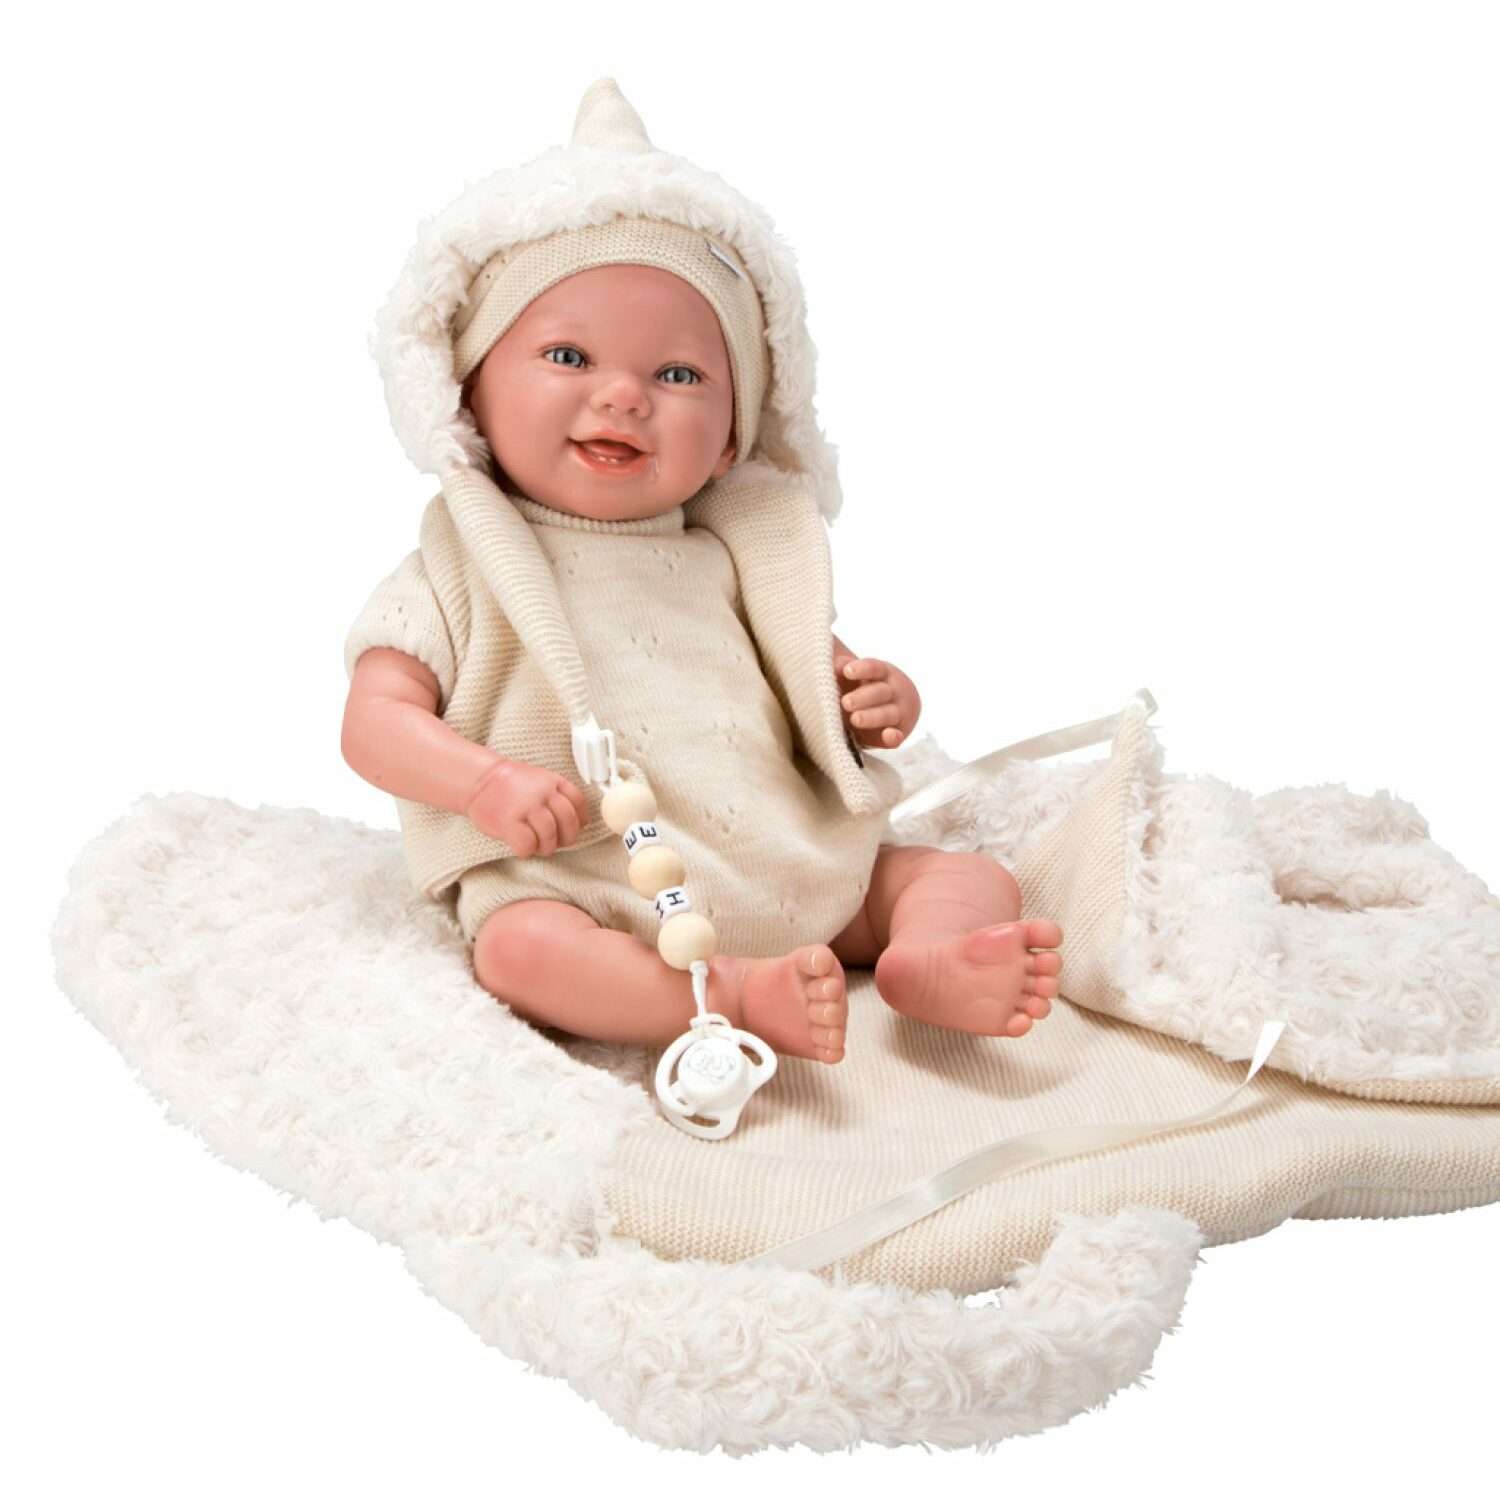 Кукла пупс Arias Reborns Diego реборн новорожденный пупс мягкий 45 см реалистичный с люлькой переноской Т22933 - фото 2